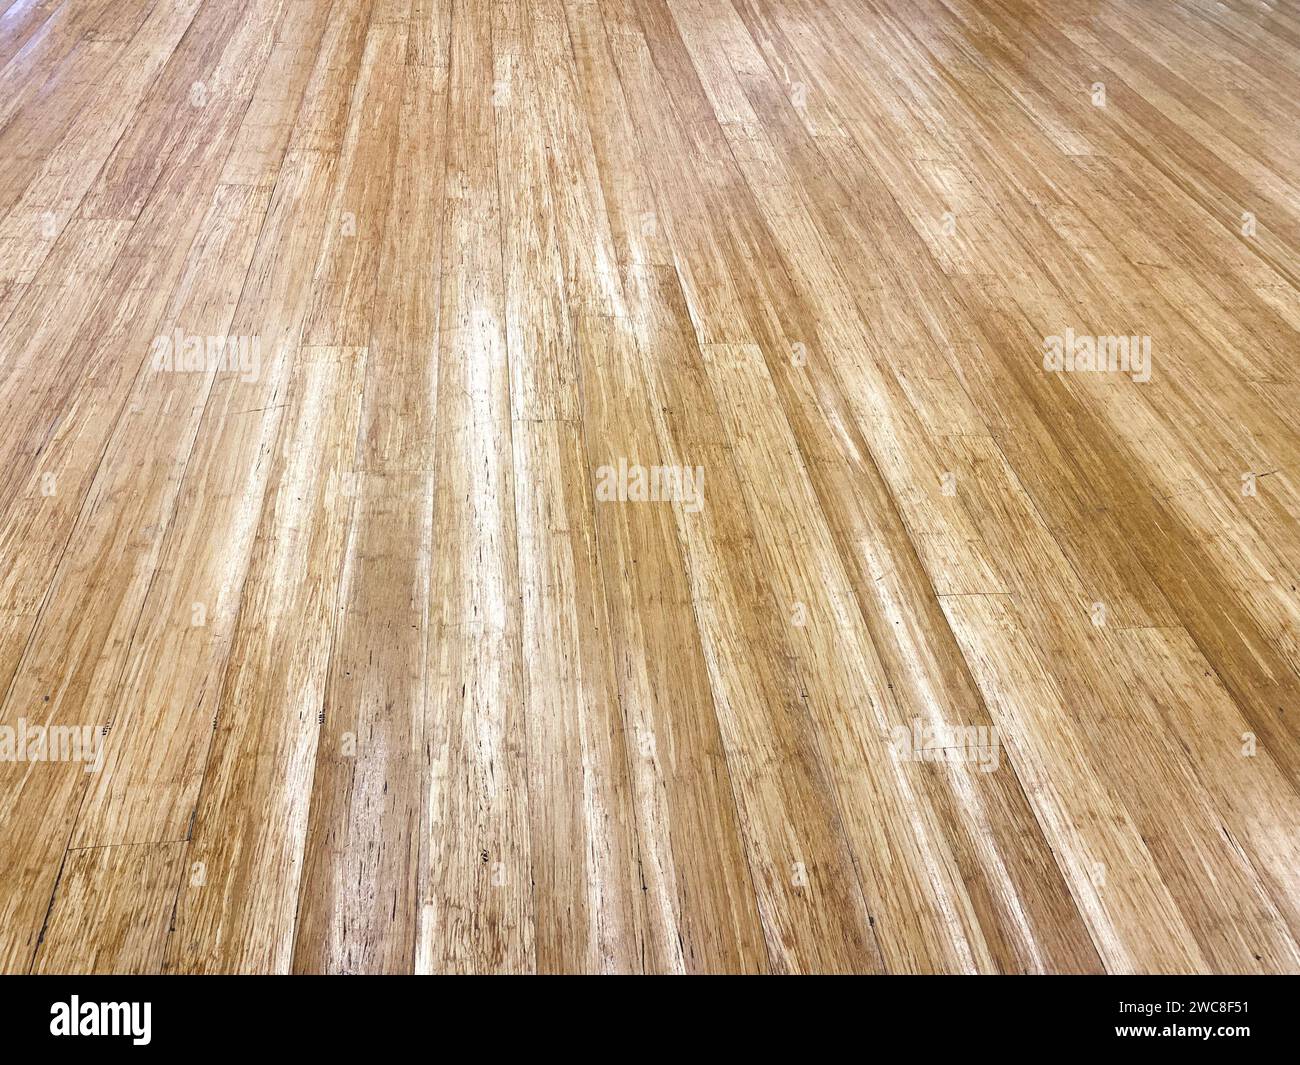 Horizontale Holztäfelung für ein Gefühl von Raum und Offenheit in Ihrem Design-Layout. Stockfoto